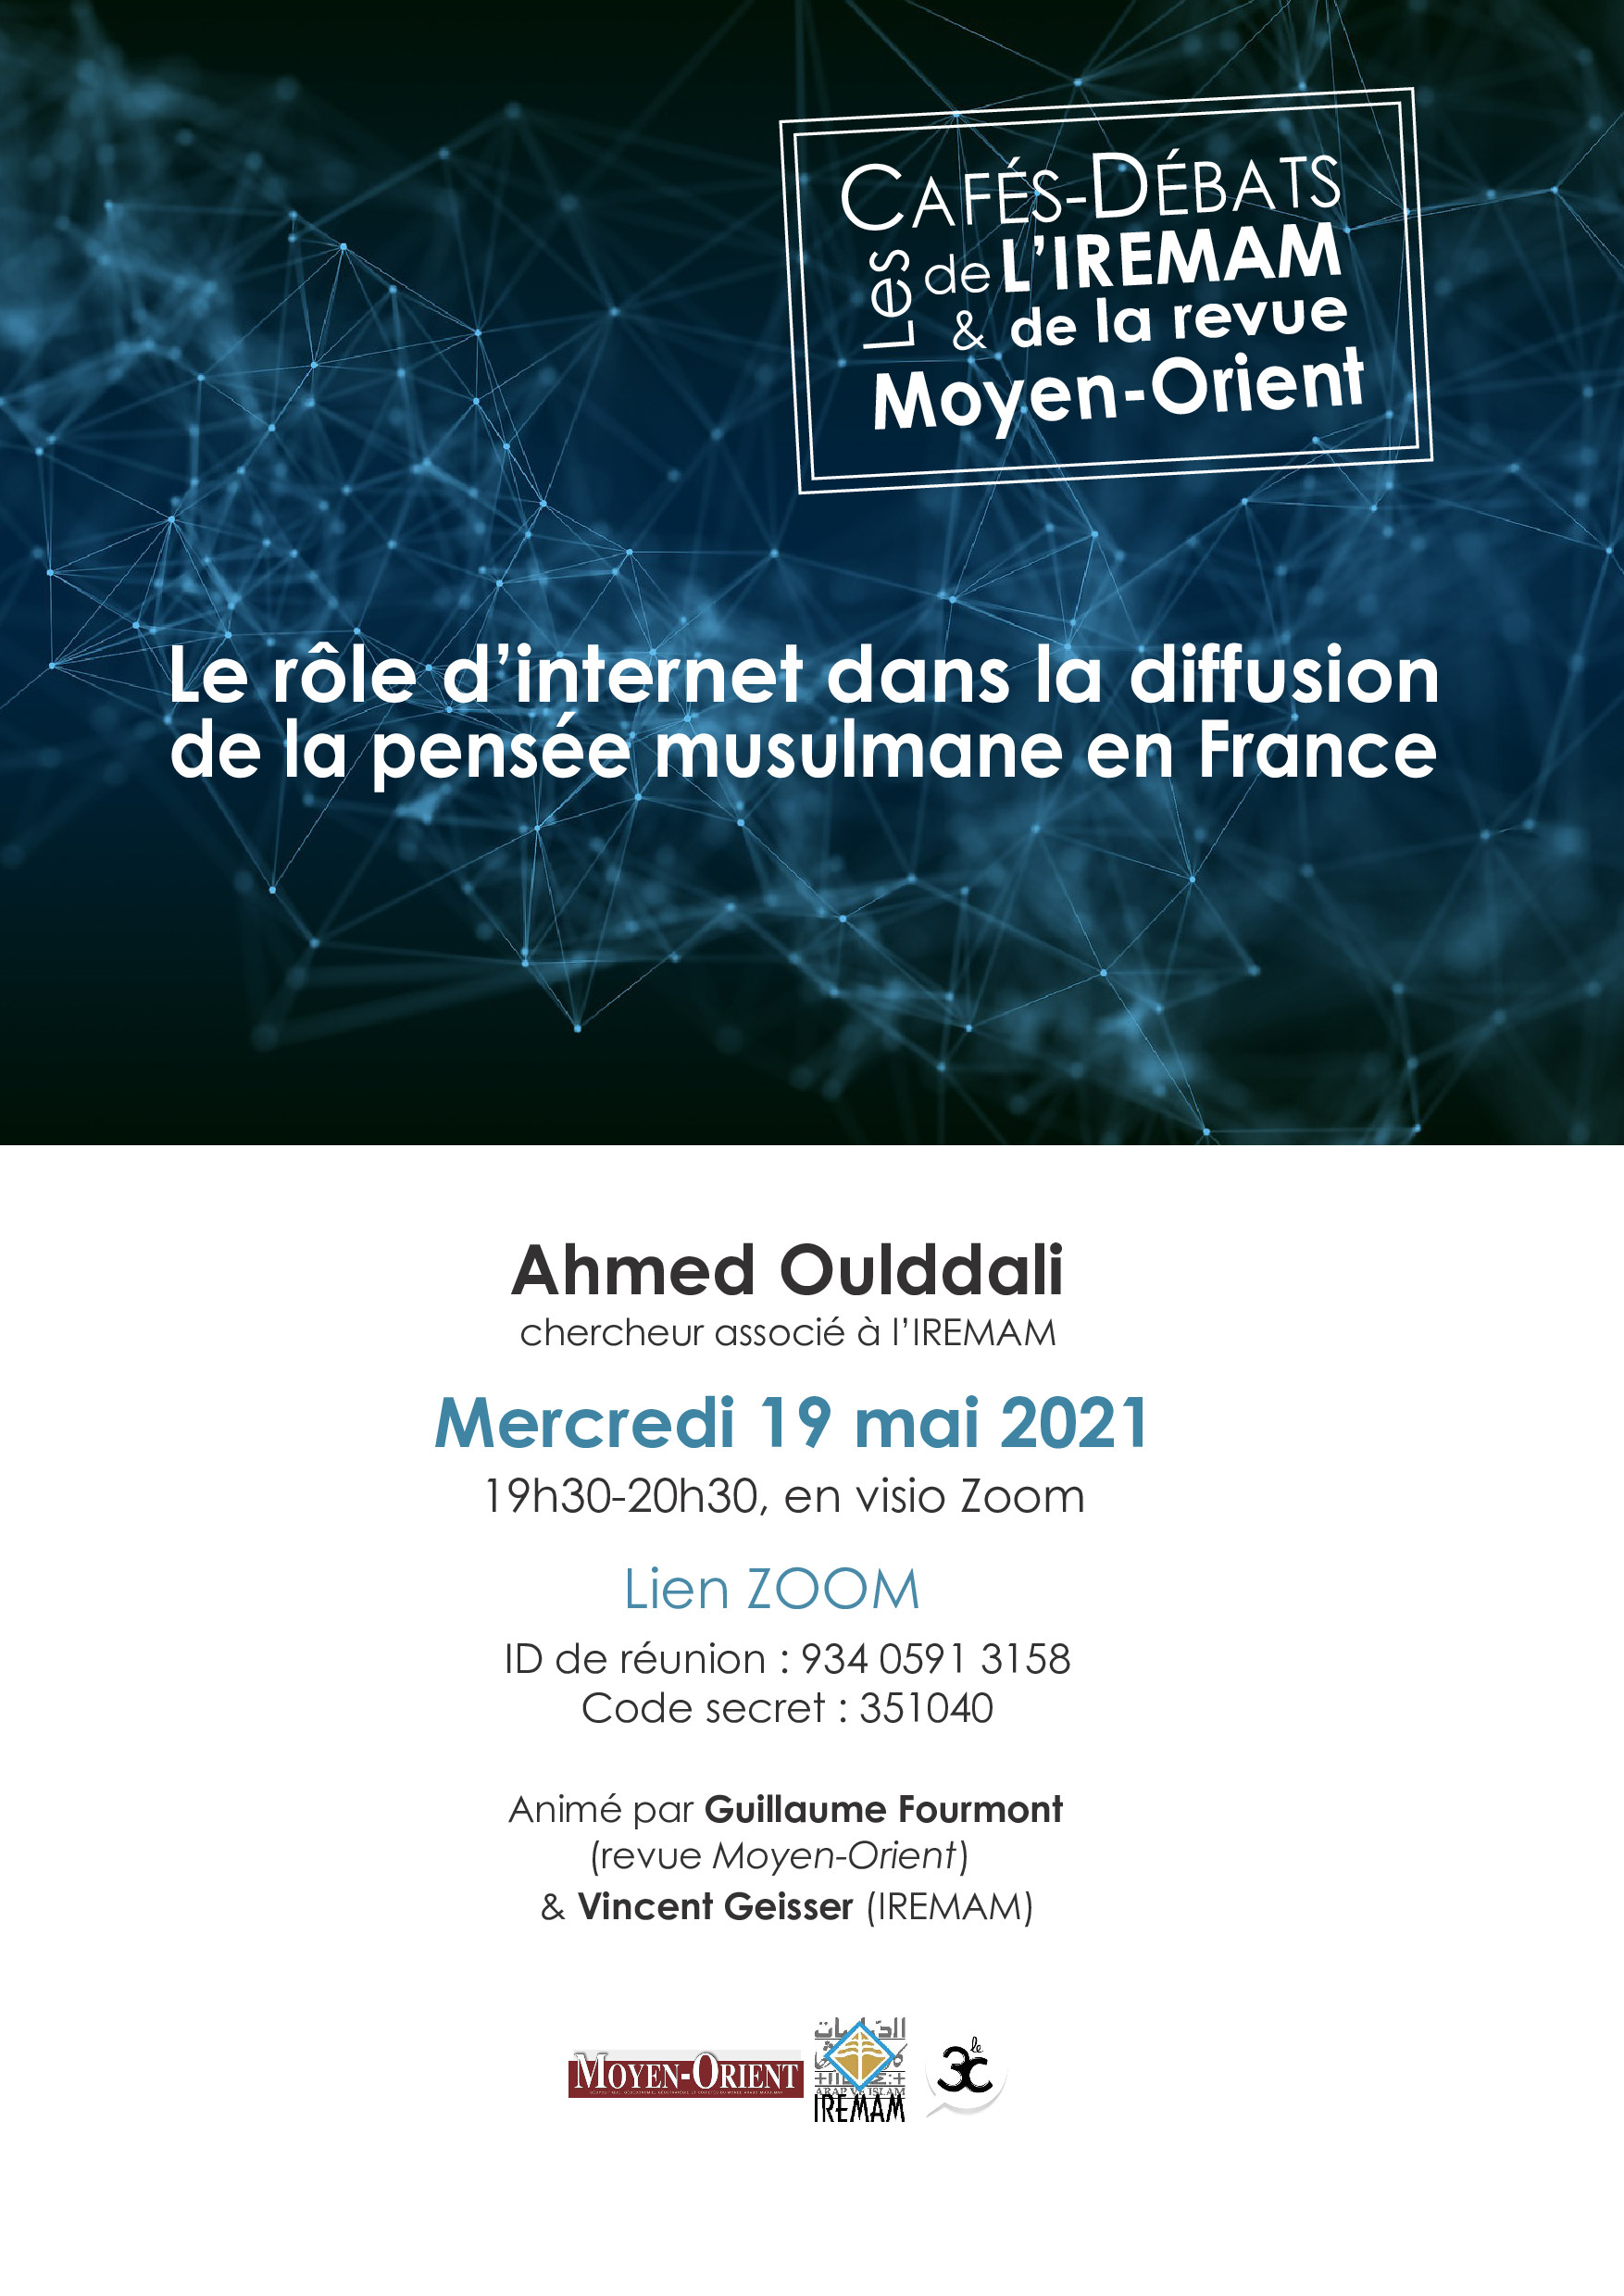 Café-Débat - Le rôle d’internet dans la diffusion de la pensée musulmane en France